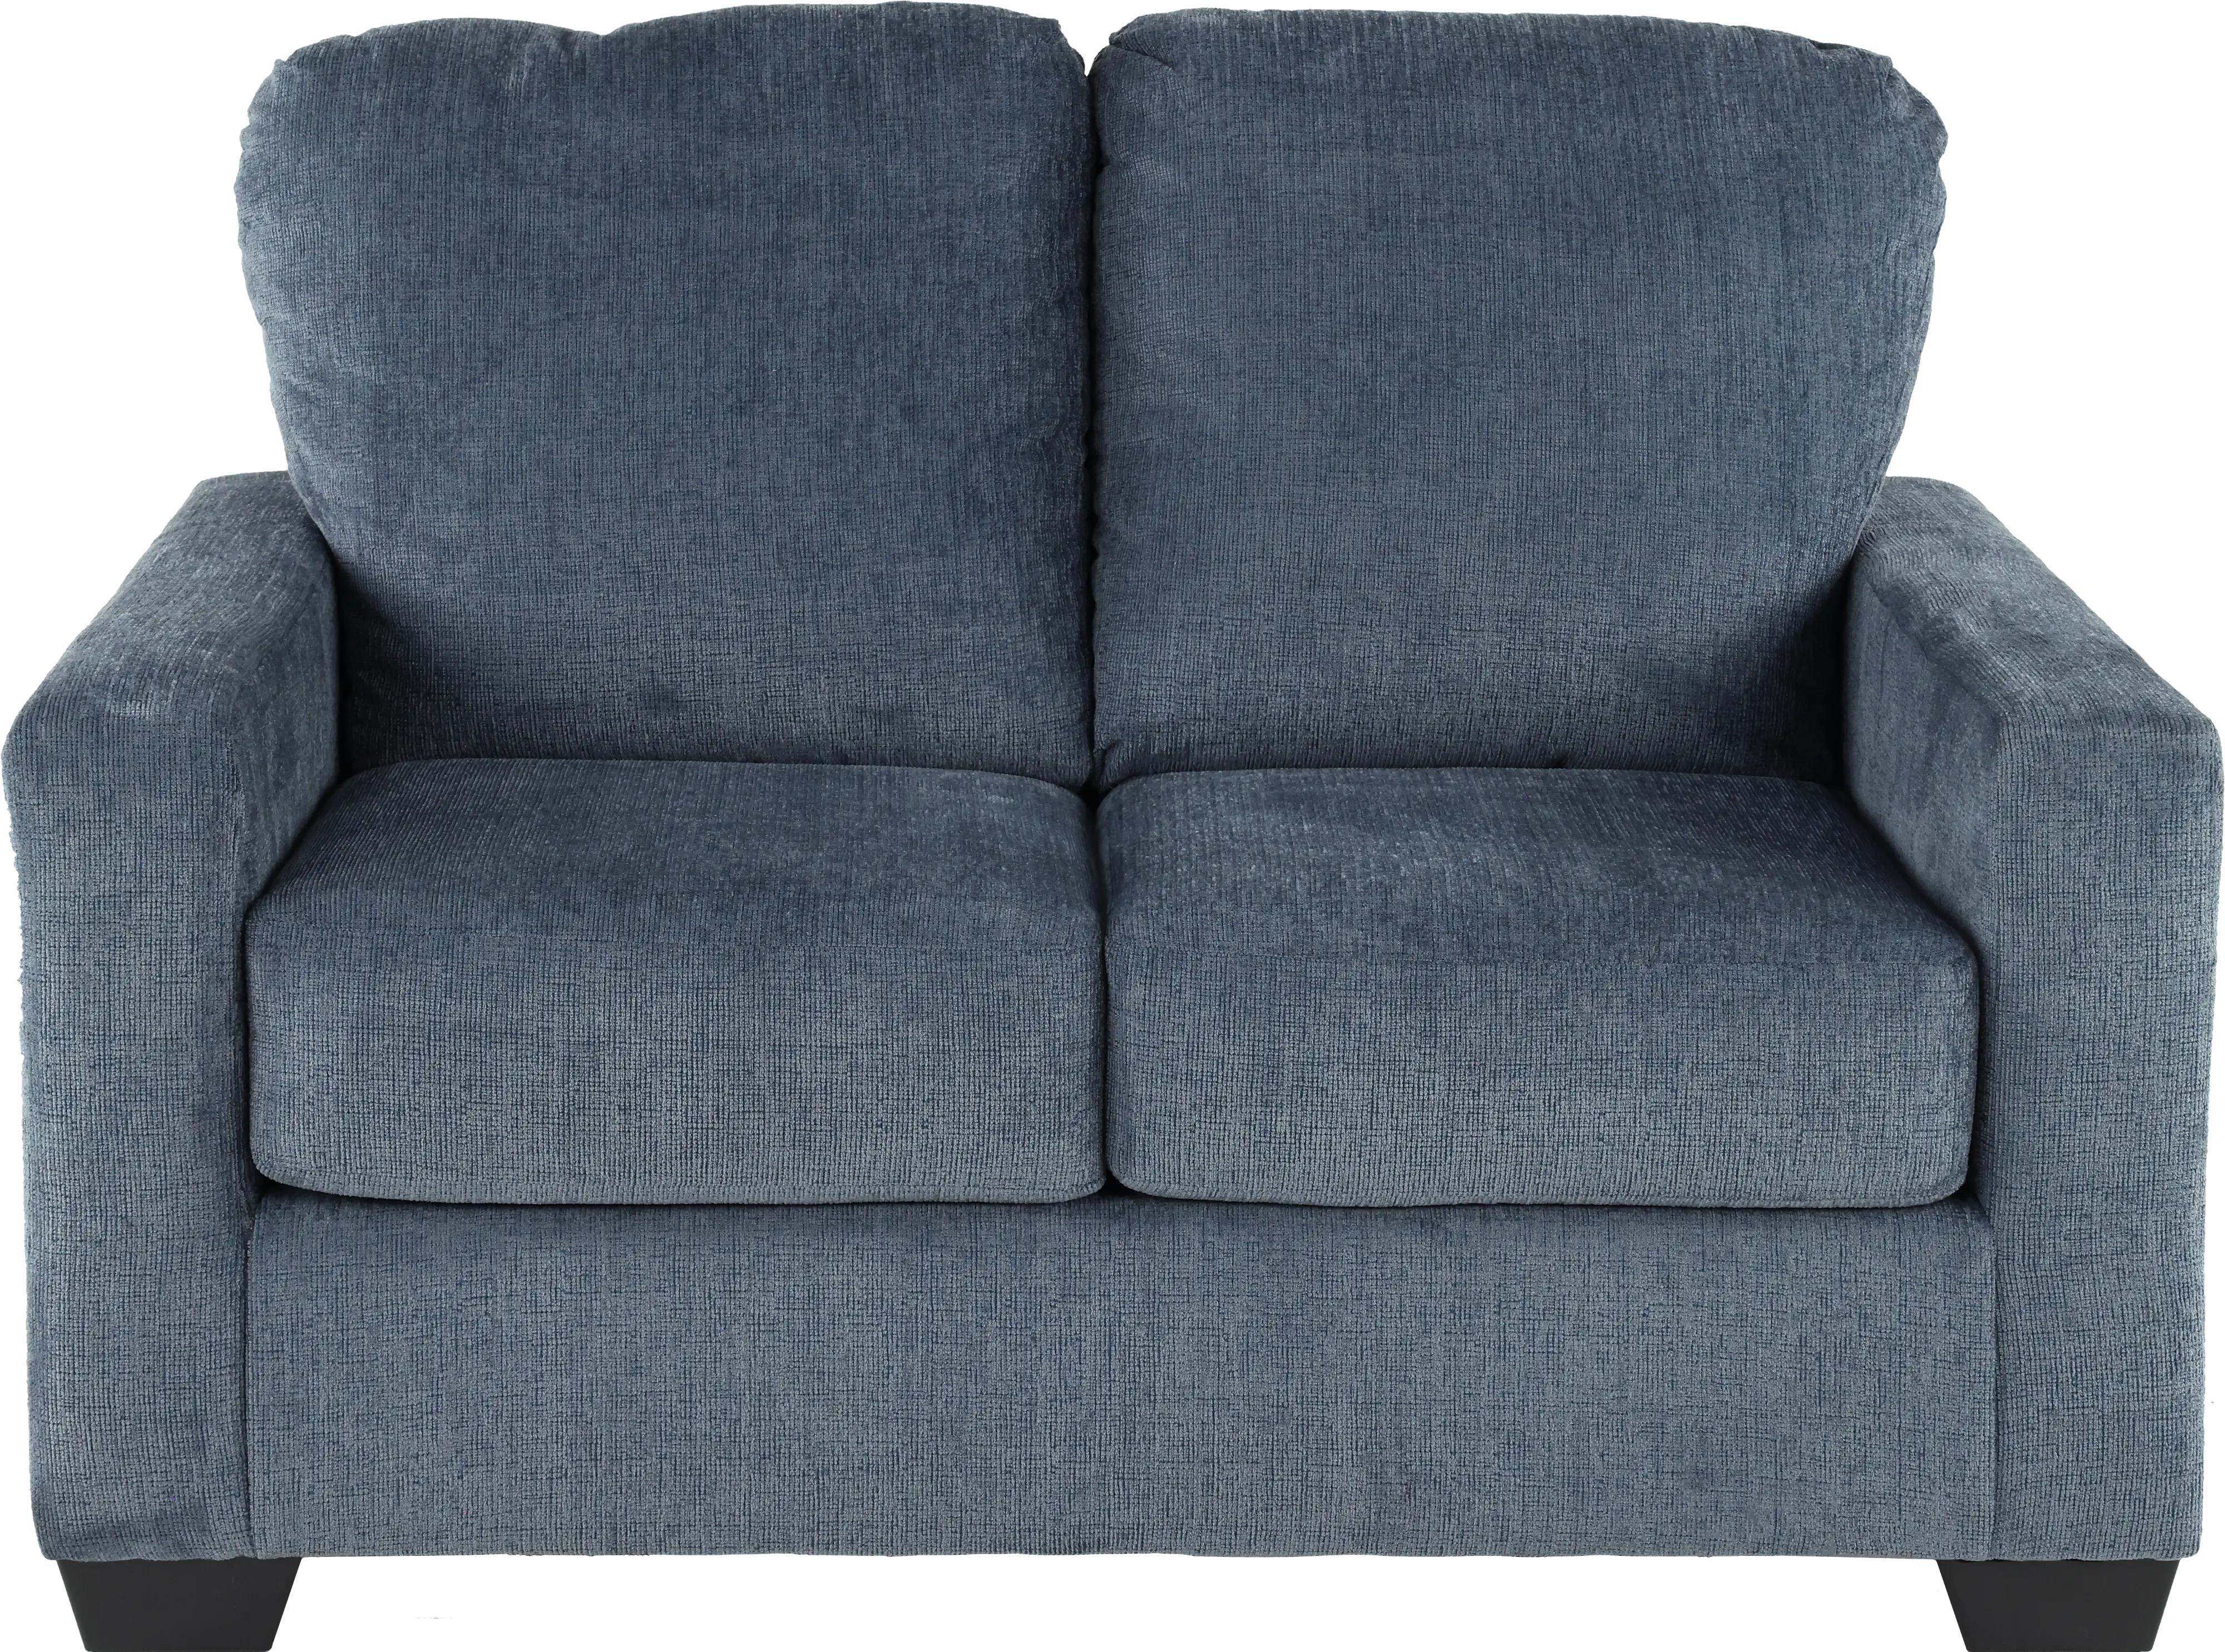 Rannis Navy Blue Twin Sleeper Sofa